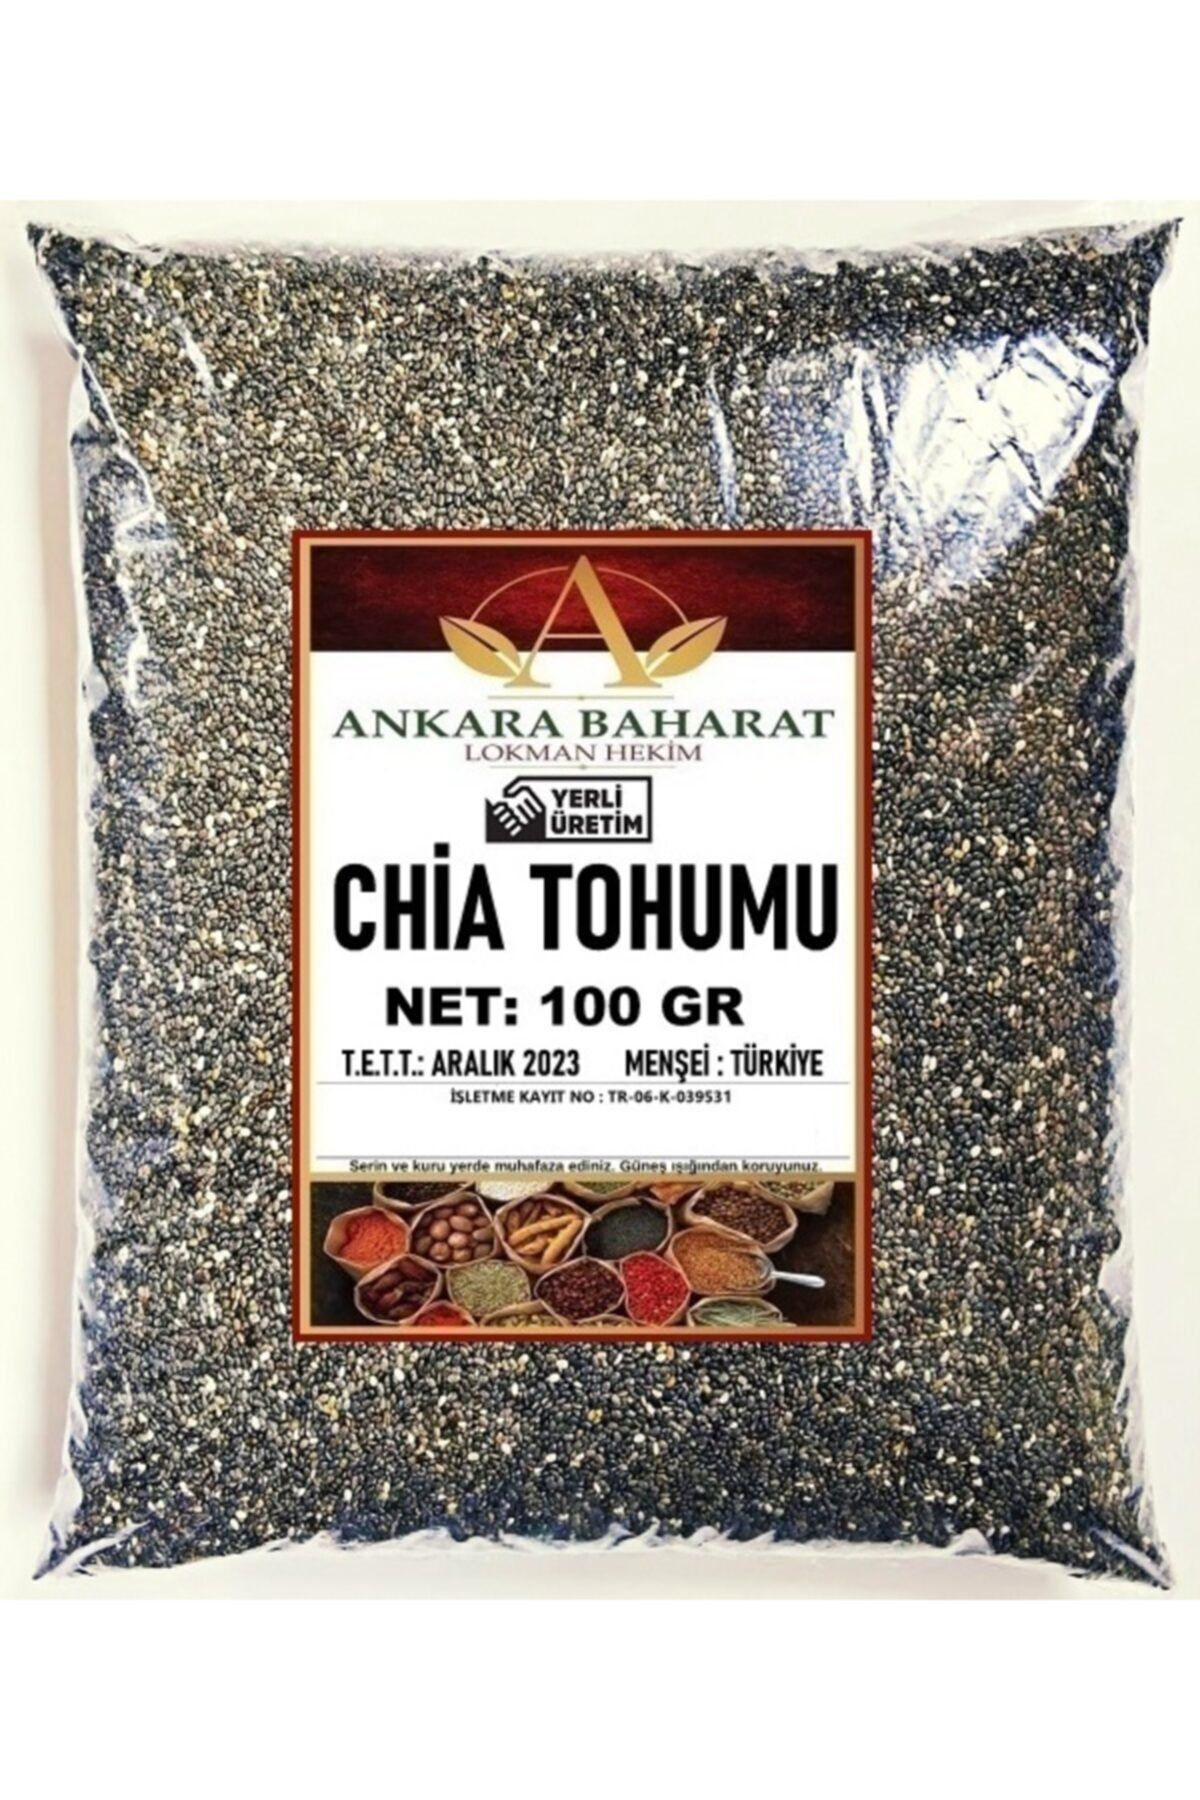 ankara baharat lokman hekim Chia Tohumu - 100 Gram